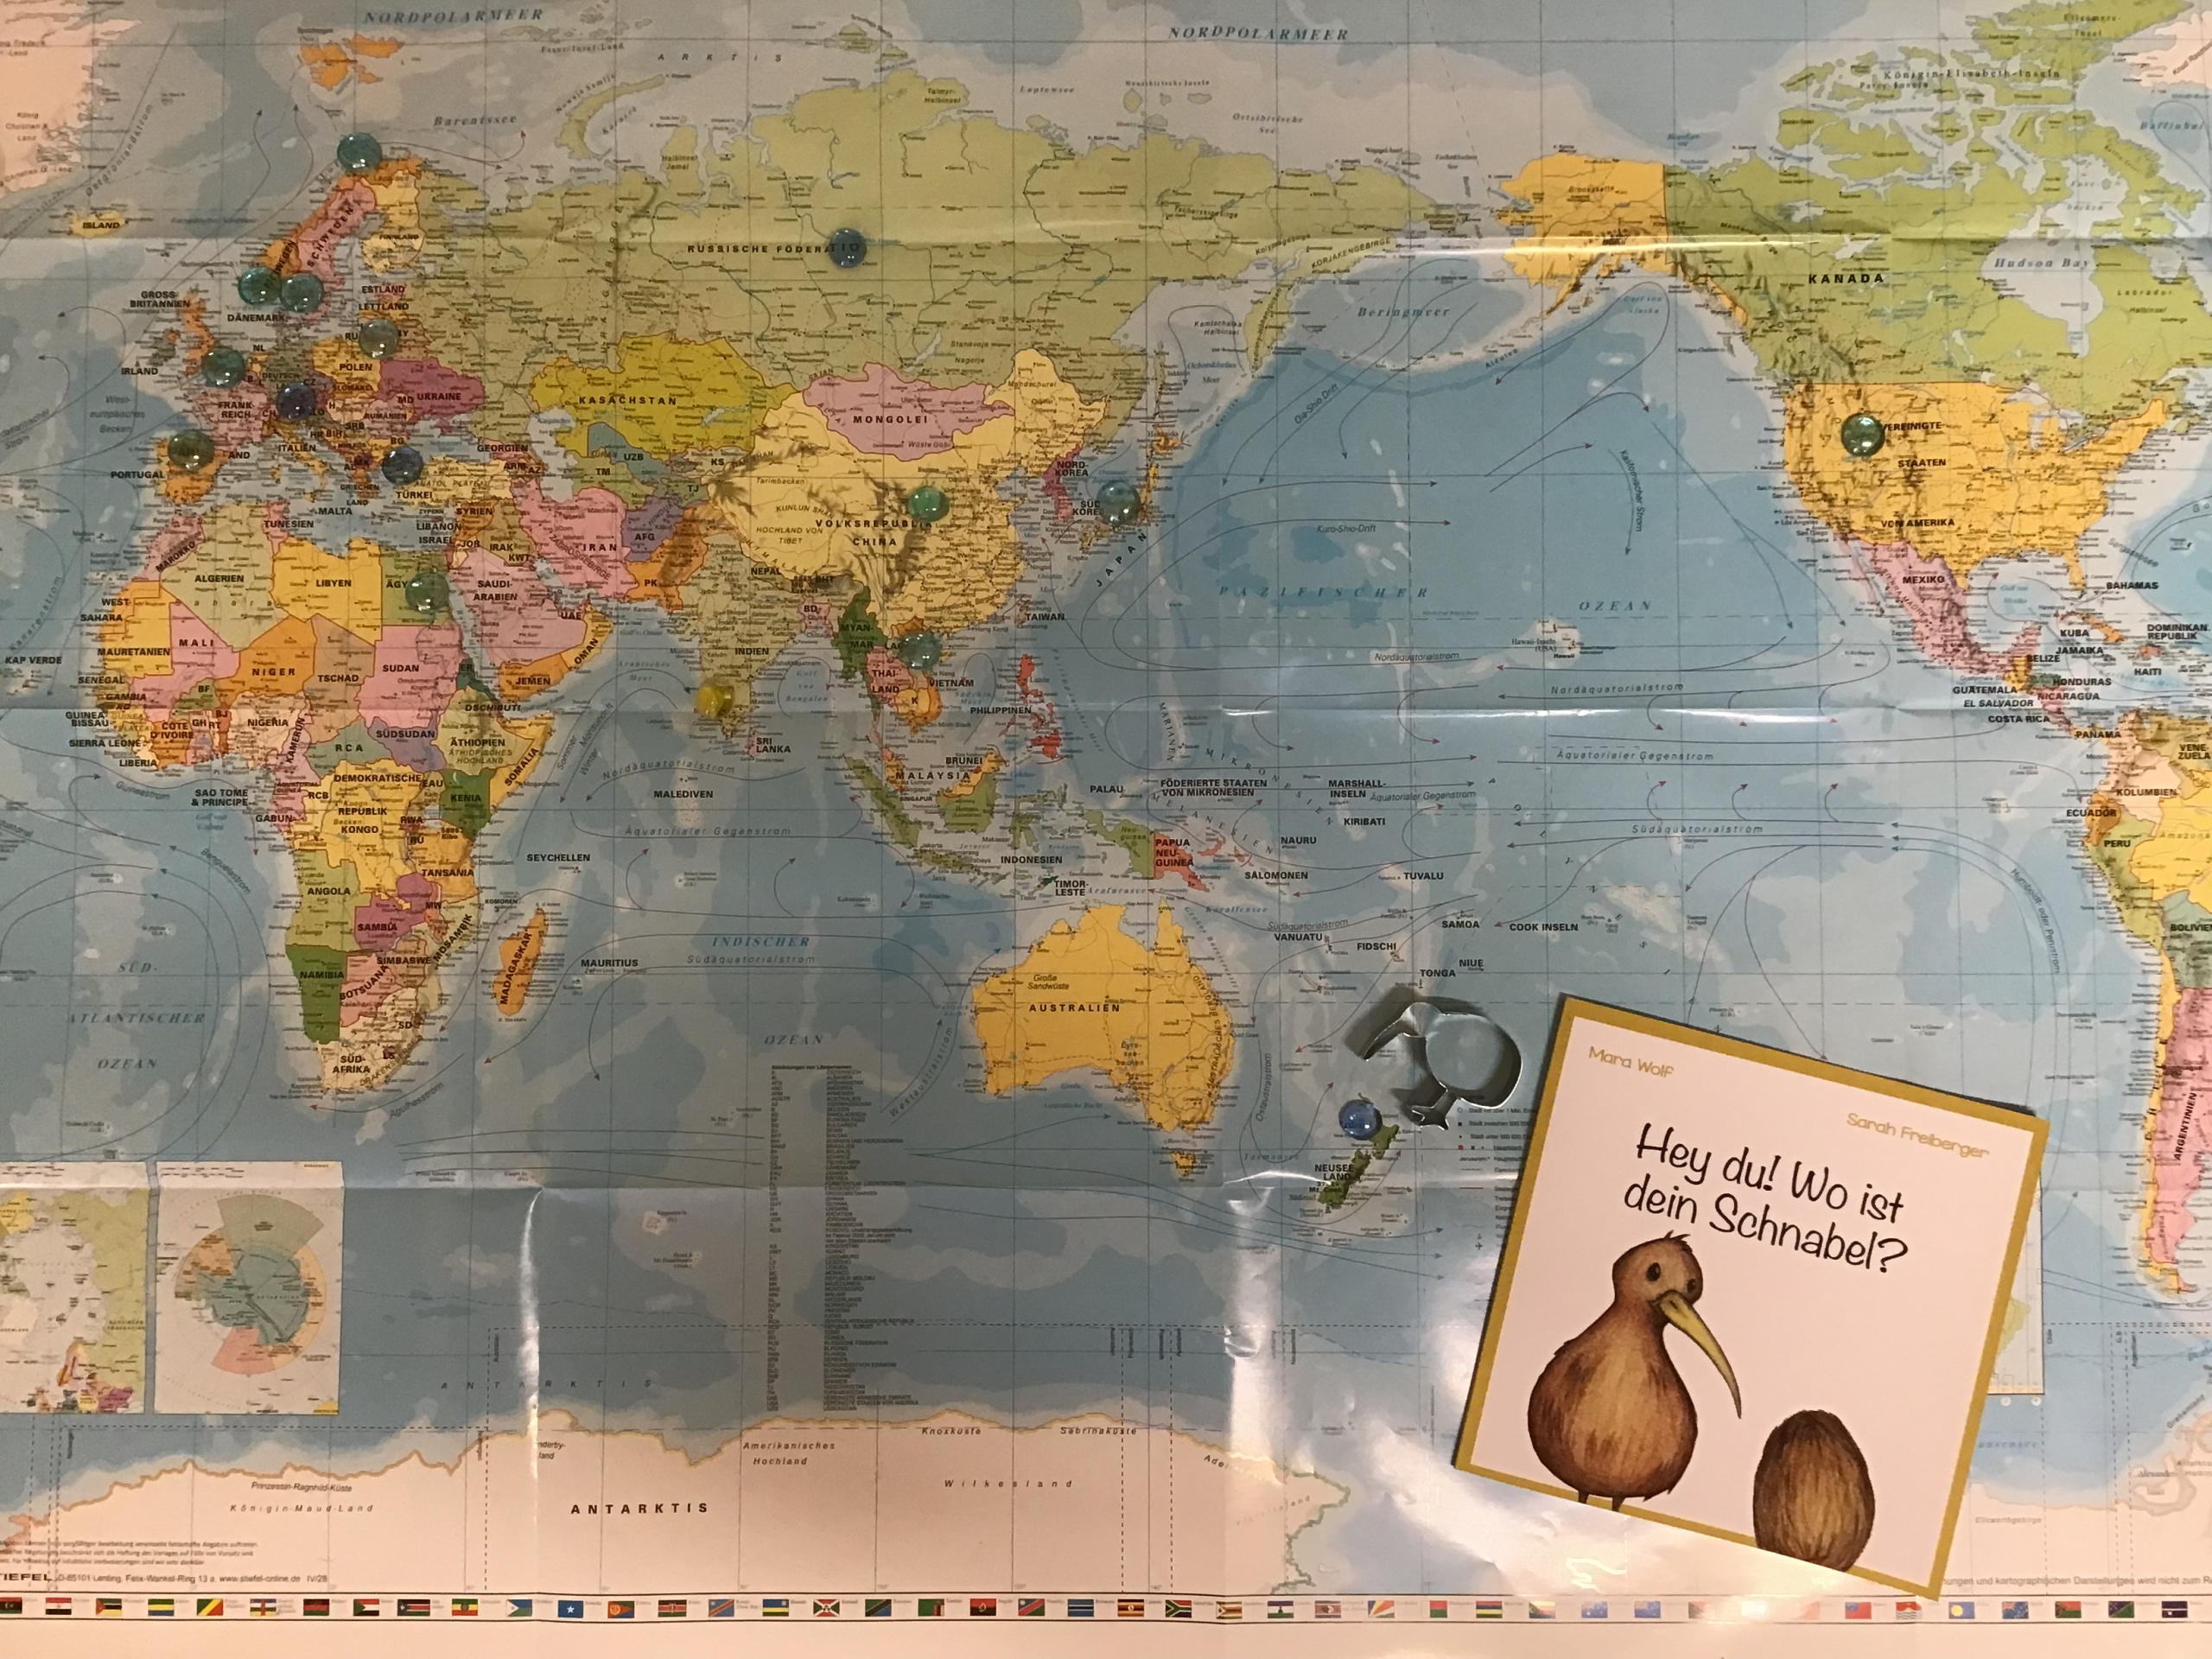 Wir haben Freunde rund um die Welt -oder: Weißt du, was ein Kiwi ist?